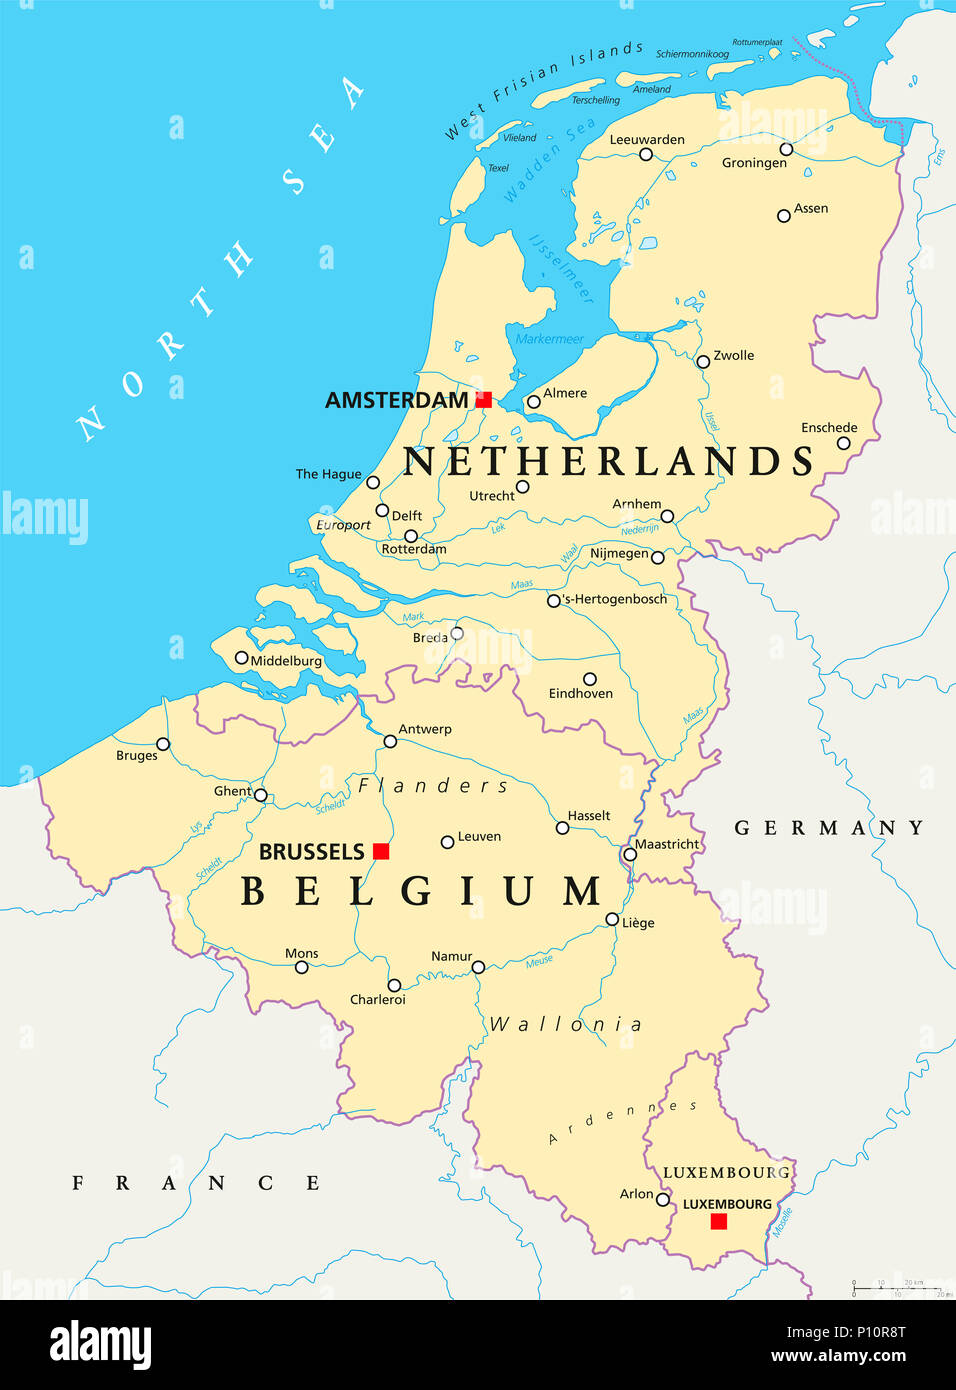 El Benelux. Bélgica, Holanda y Luxemburgo. Mapa político con fronteras, capitales y ciudades importantes. Unión del Benelux. Foto de stock